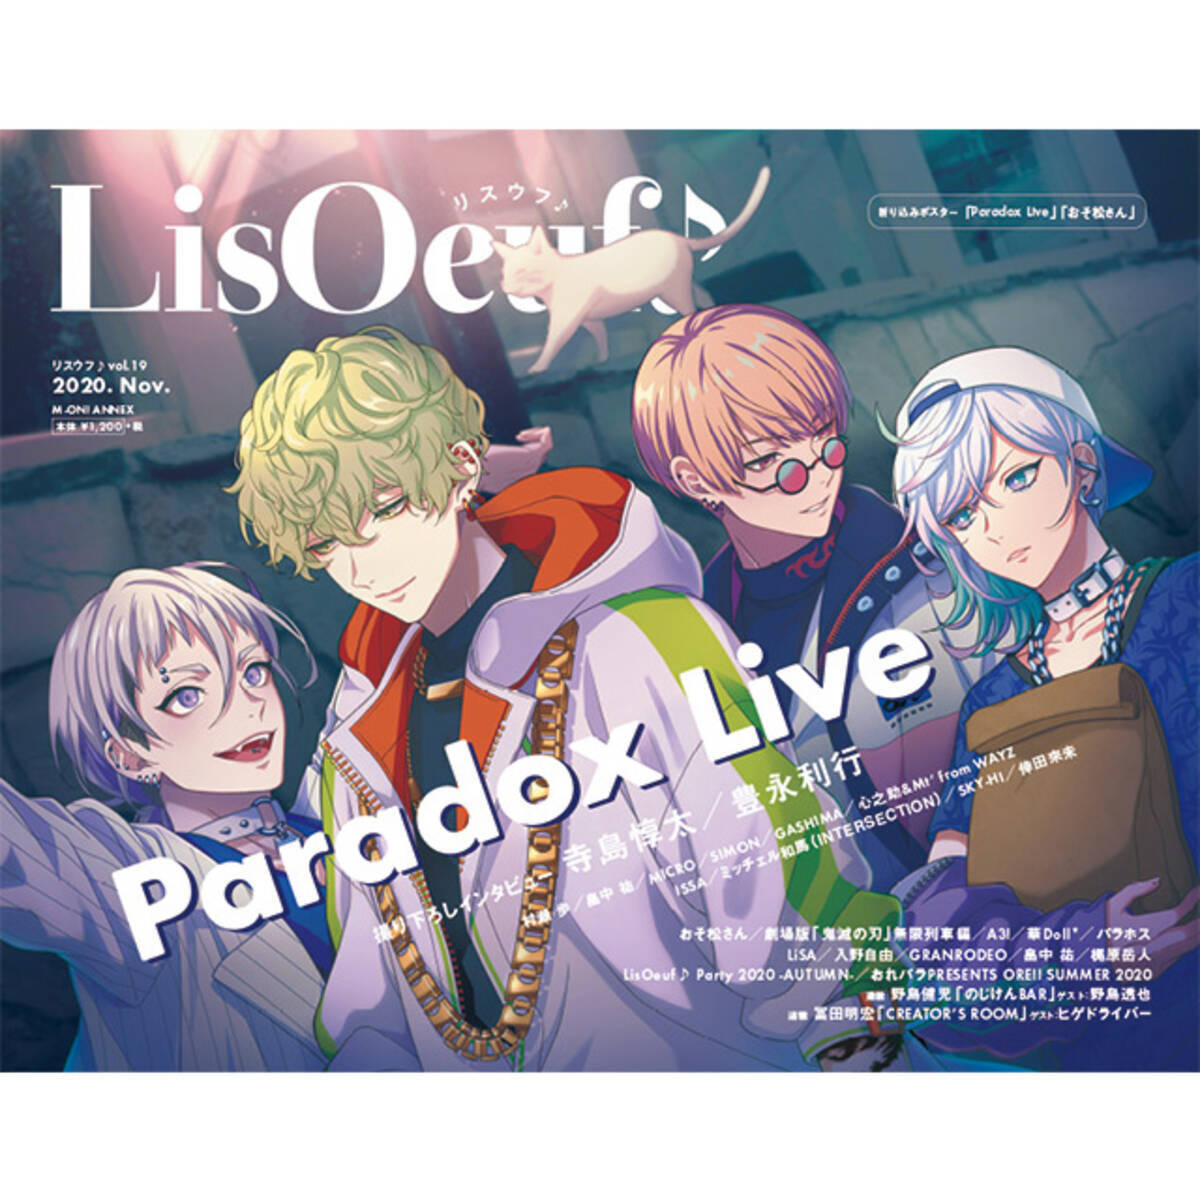 Paradox Live の描き下ろしイラストが表紙の Lisoeuf Vol 19 が本日発売 裏表紙 巻末特集は Tvアニメ おそ松さん 年10月29日 エキサイトニュース